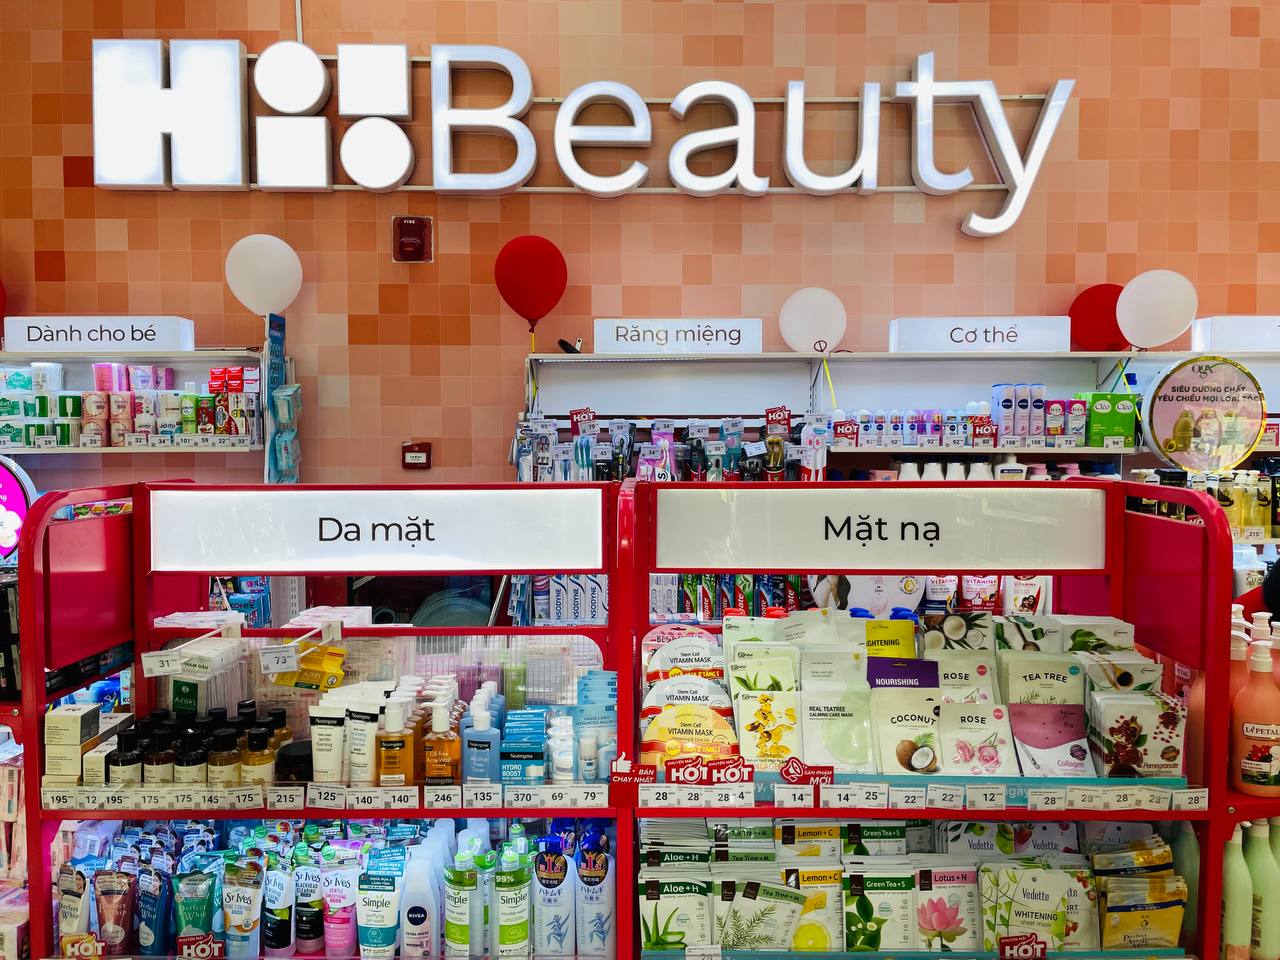 Tại Hi!Beauty, người tiêu dùng có thể tìm kiếm các sản phẩm chăm sóc, làm đẹp đến từ các thương hiệu uy tín với mức giá phải chăng.